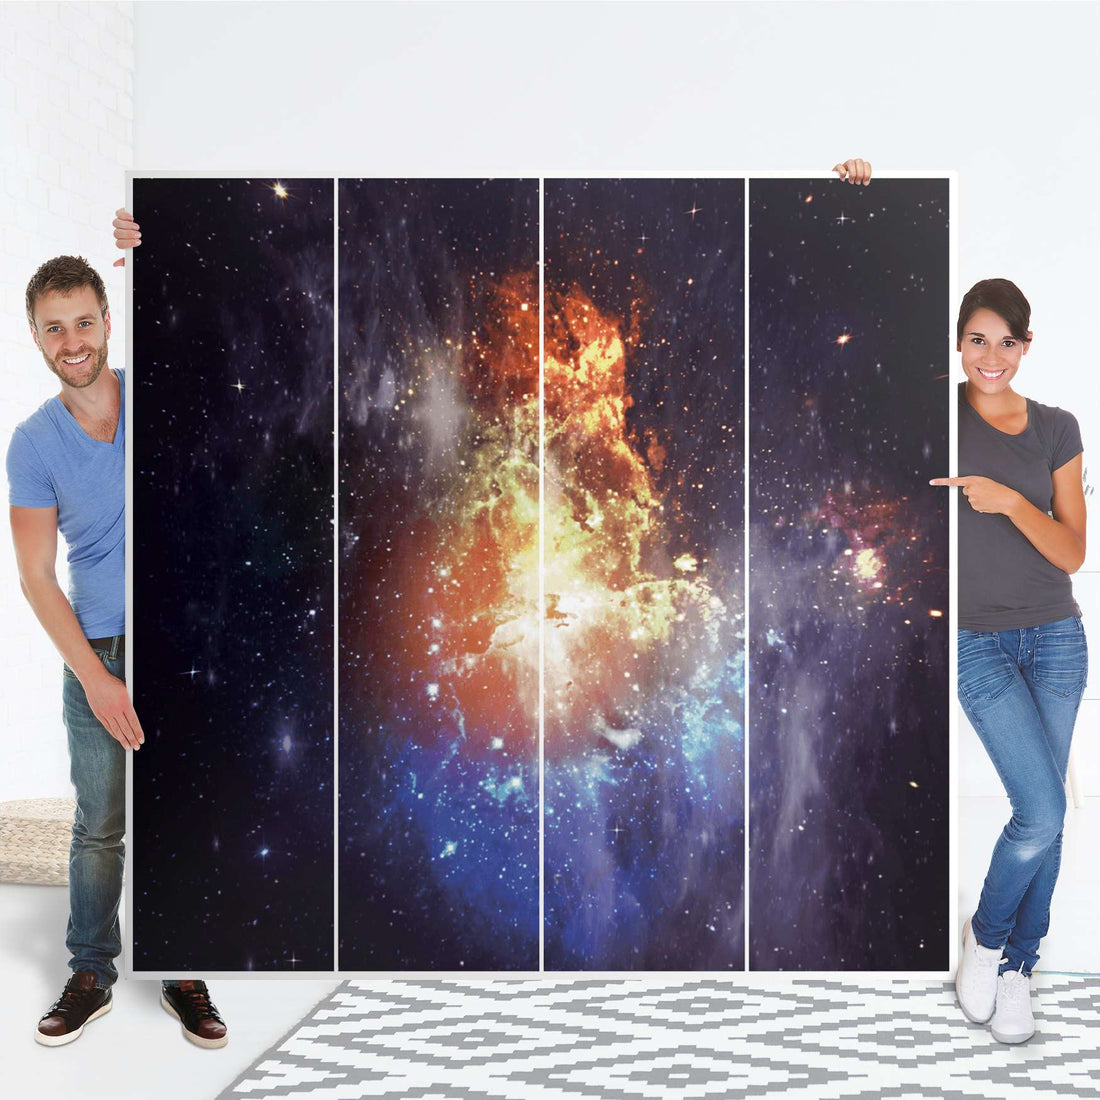 Klebefolie für Schränke Nebula - IKEA Pax Schrank 201 cm Höhe - 4 Türen - Folie